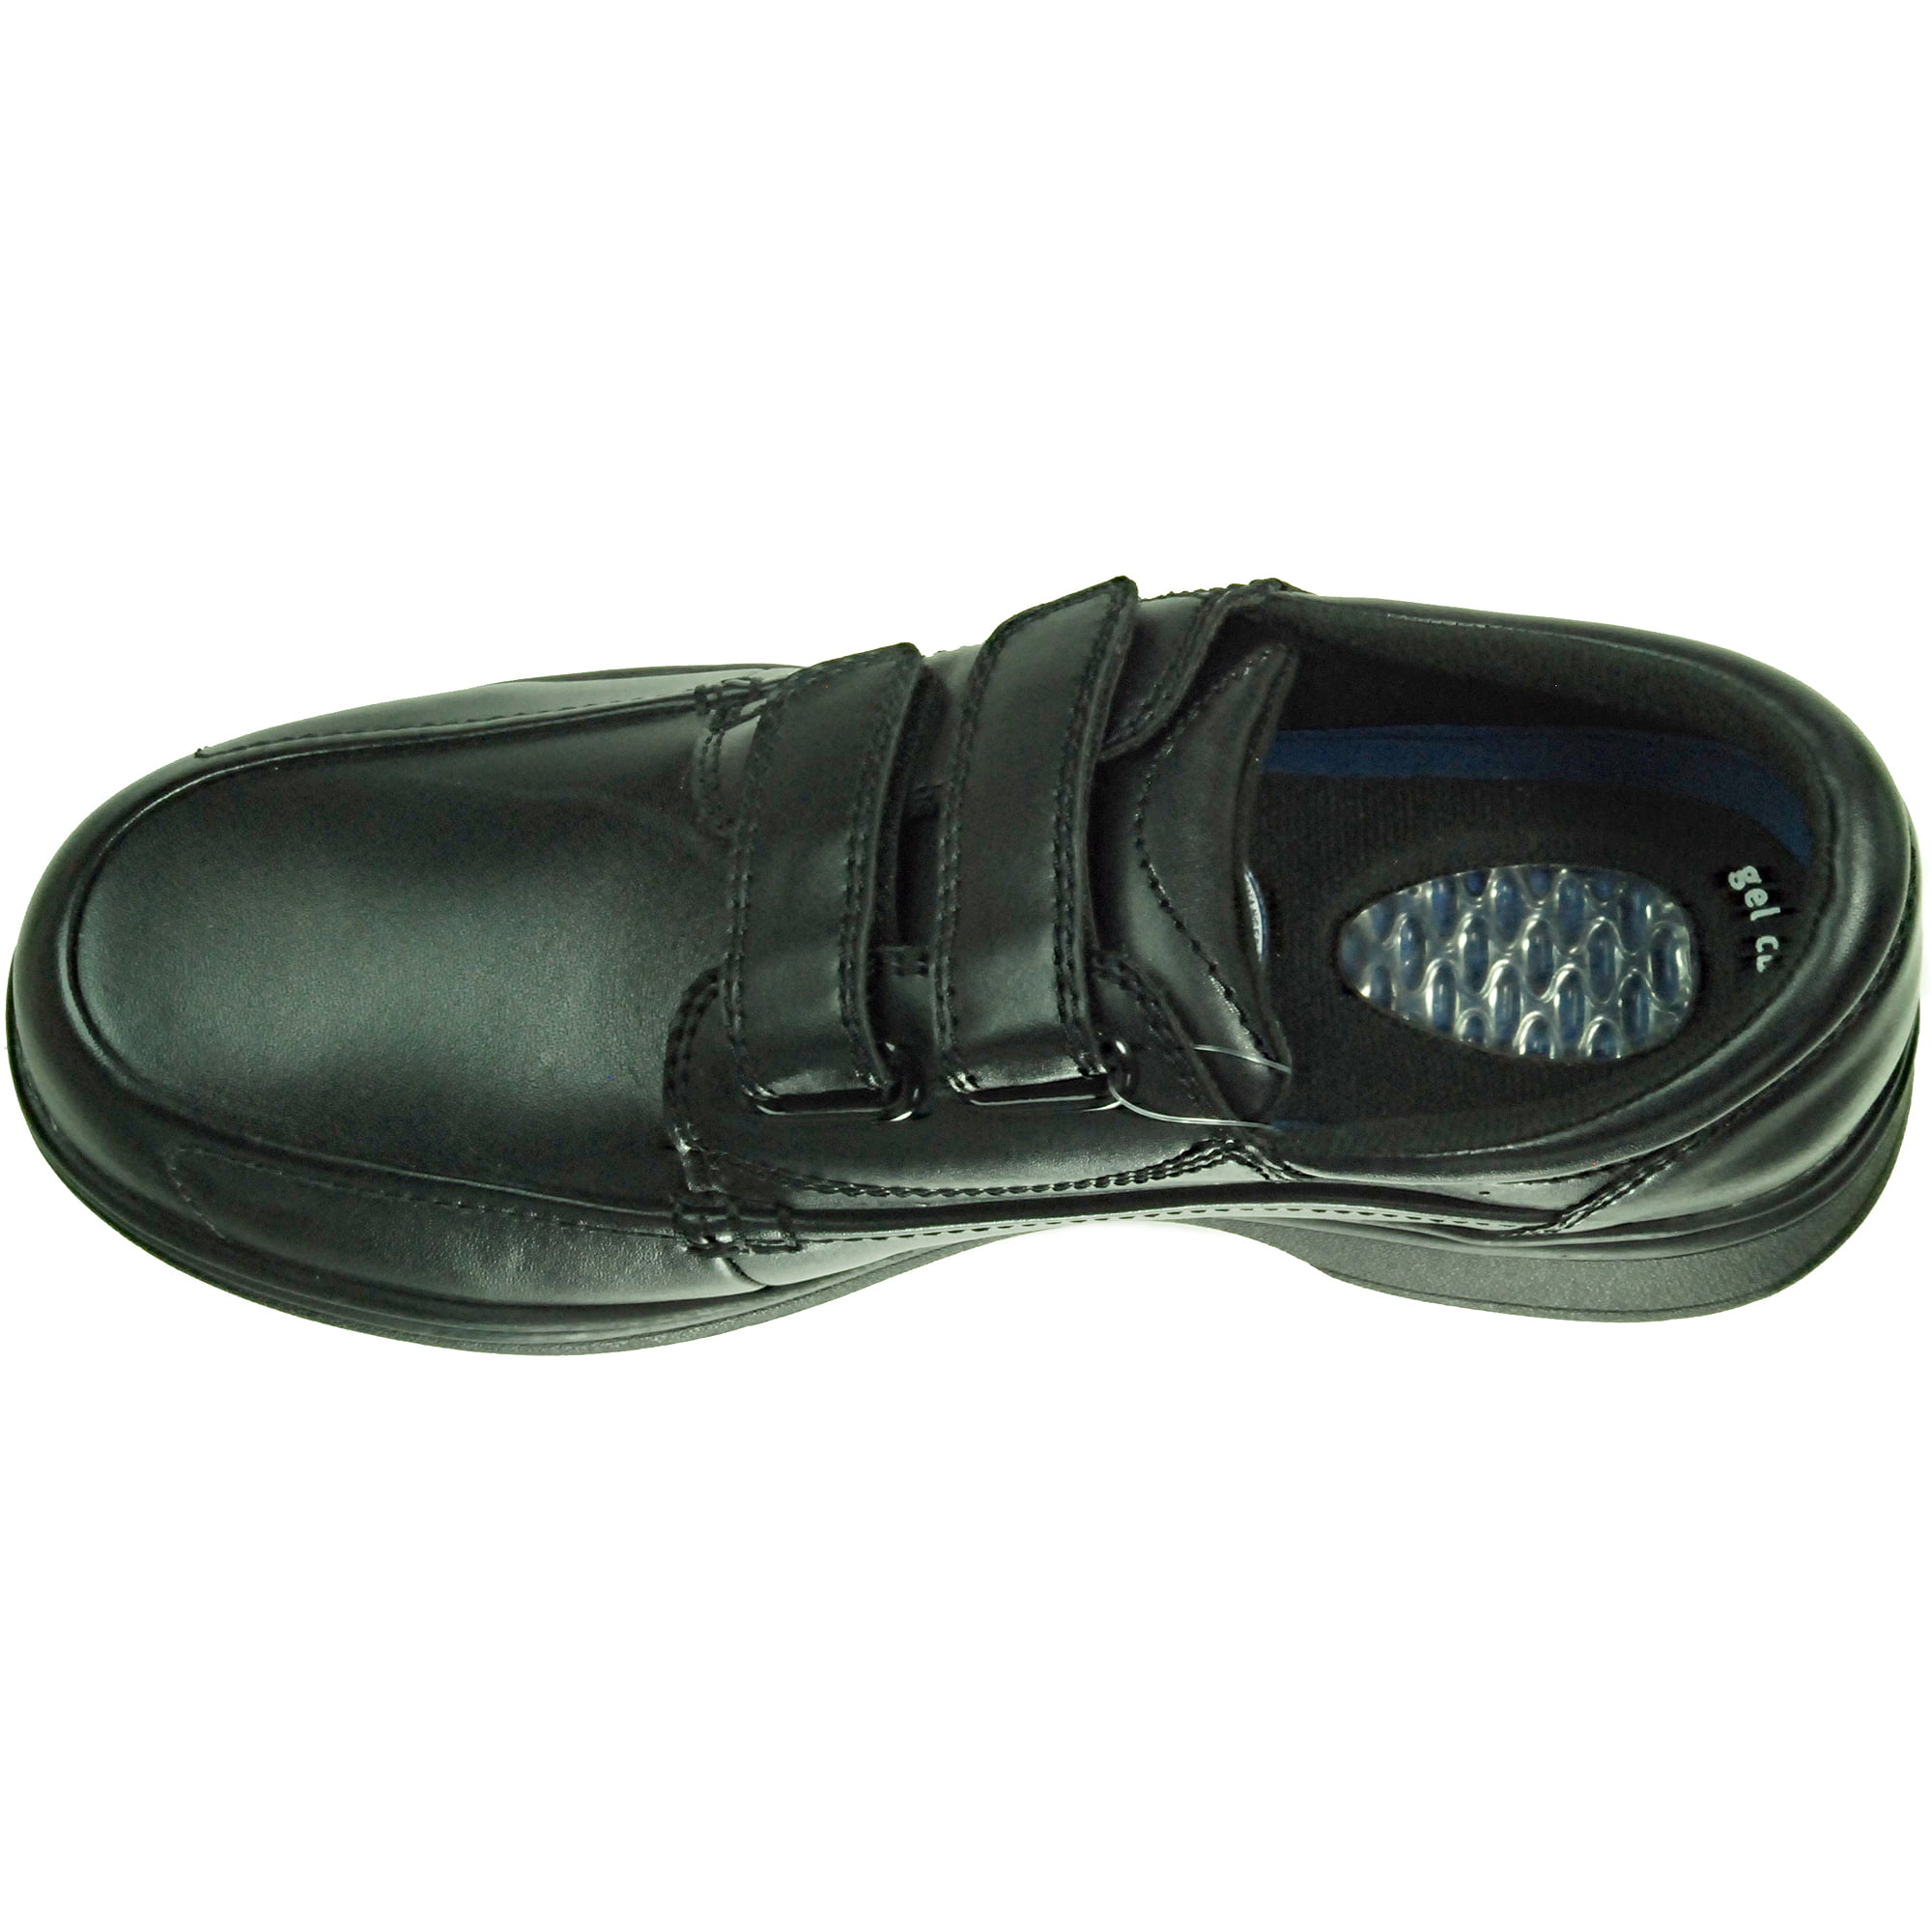 walmart doctor scholls shoes